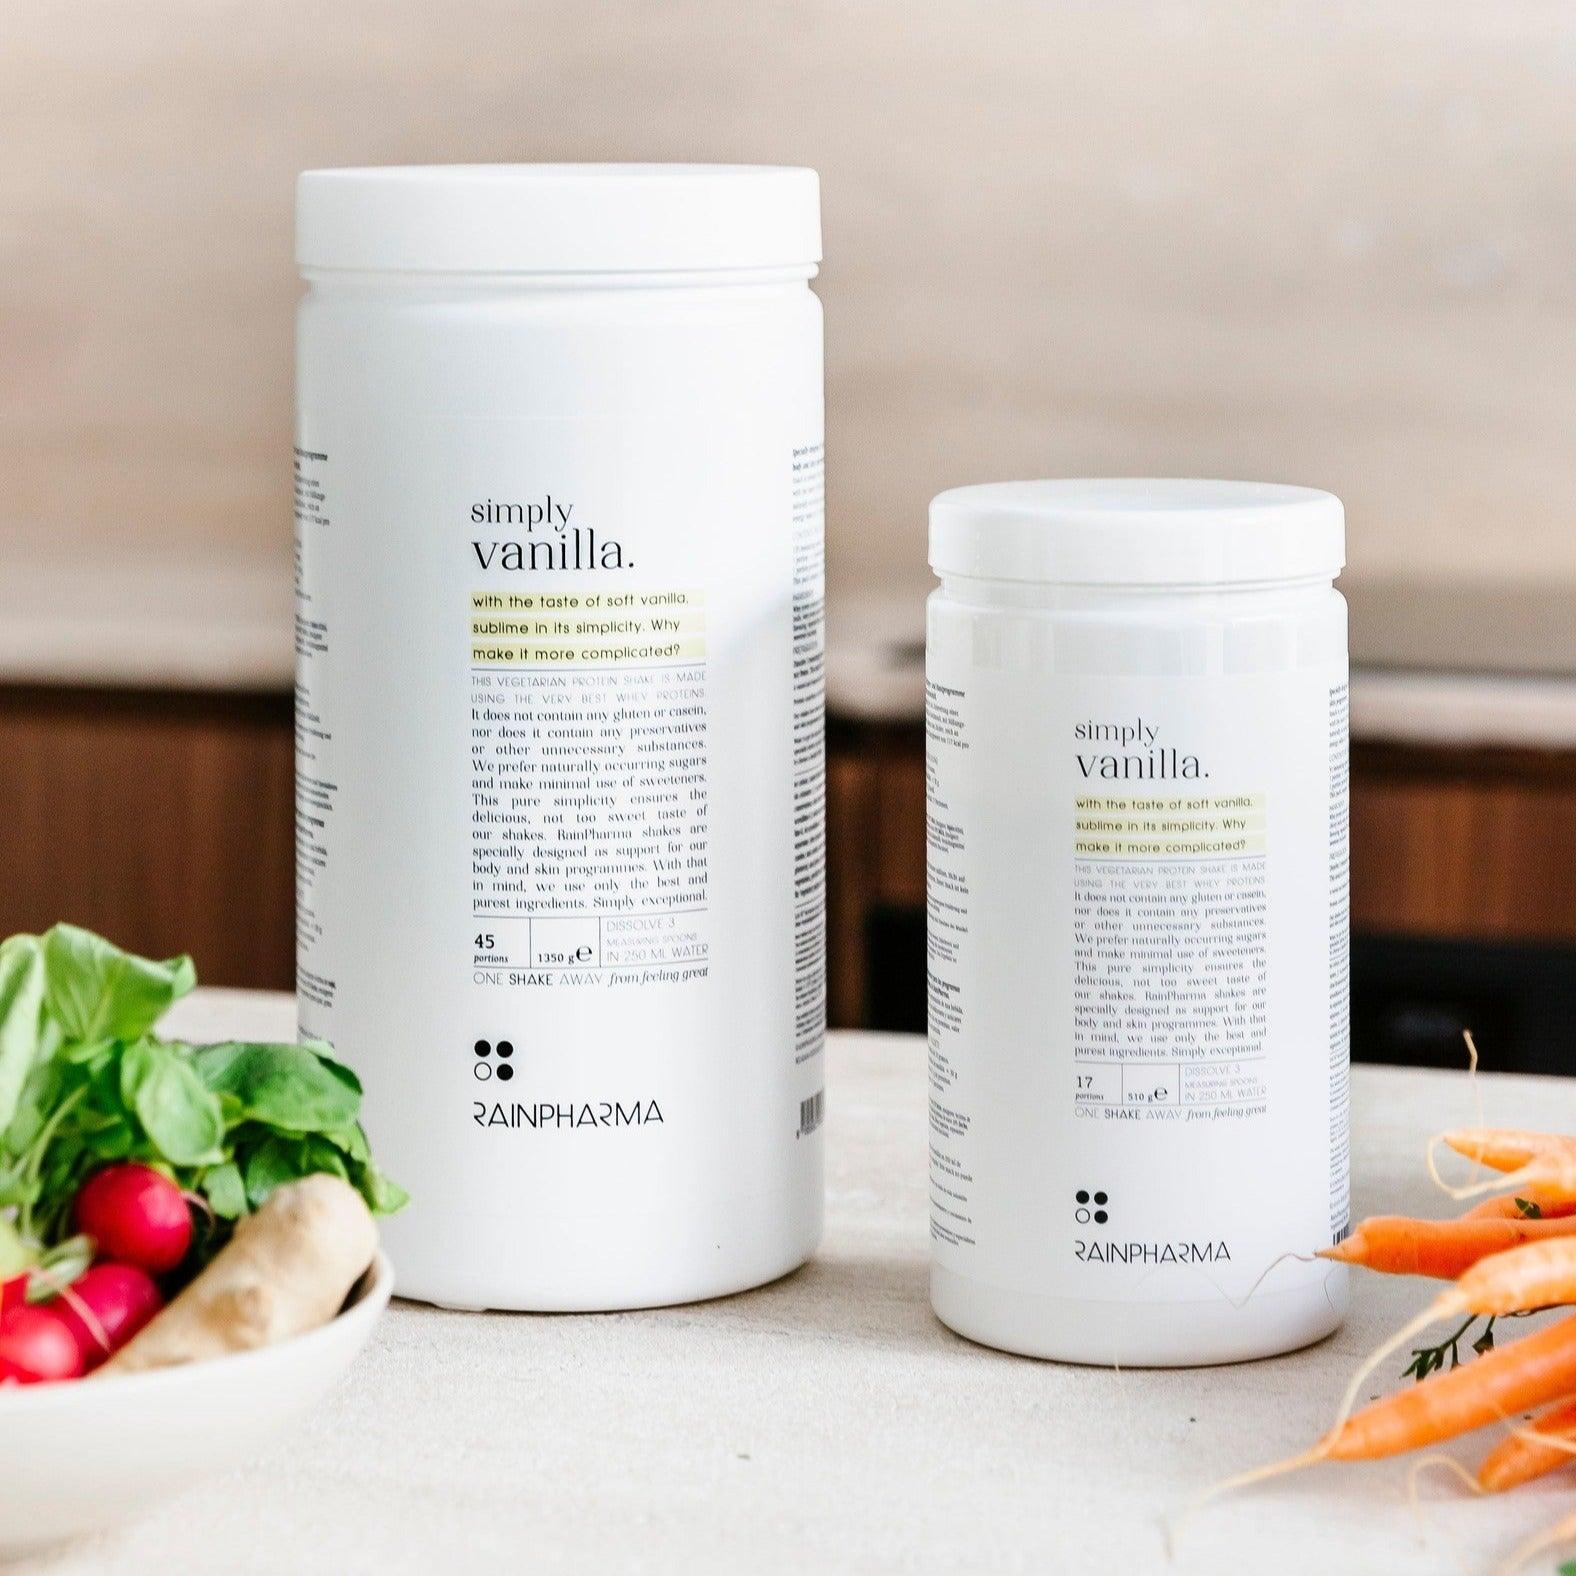 Twee containers Rainpharma XL Shake Simply Vanilla - Limited Edition voedingssupplement op een aanrecht, omringd door verse groenten.